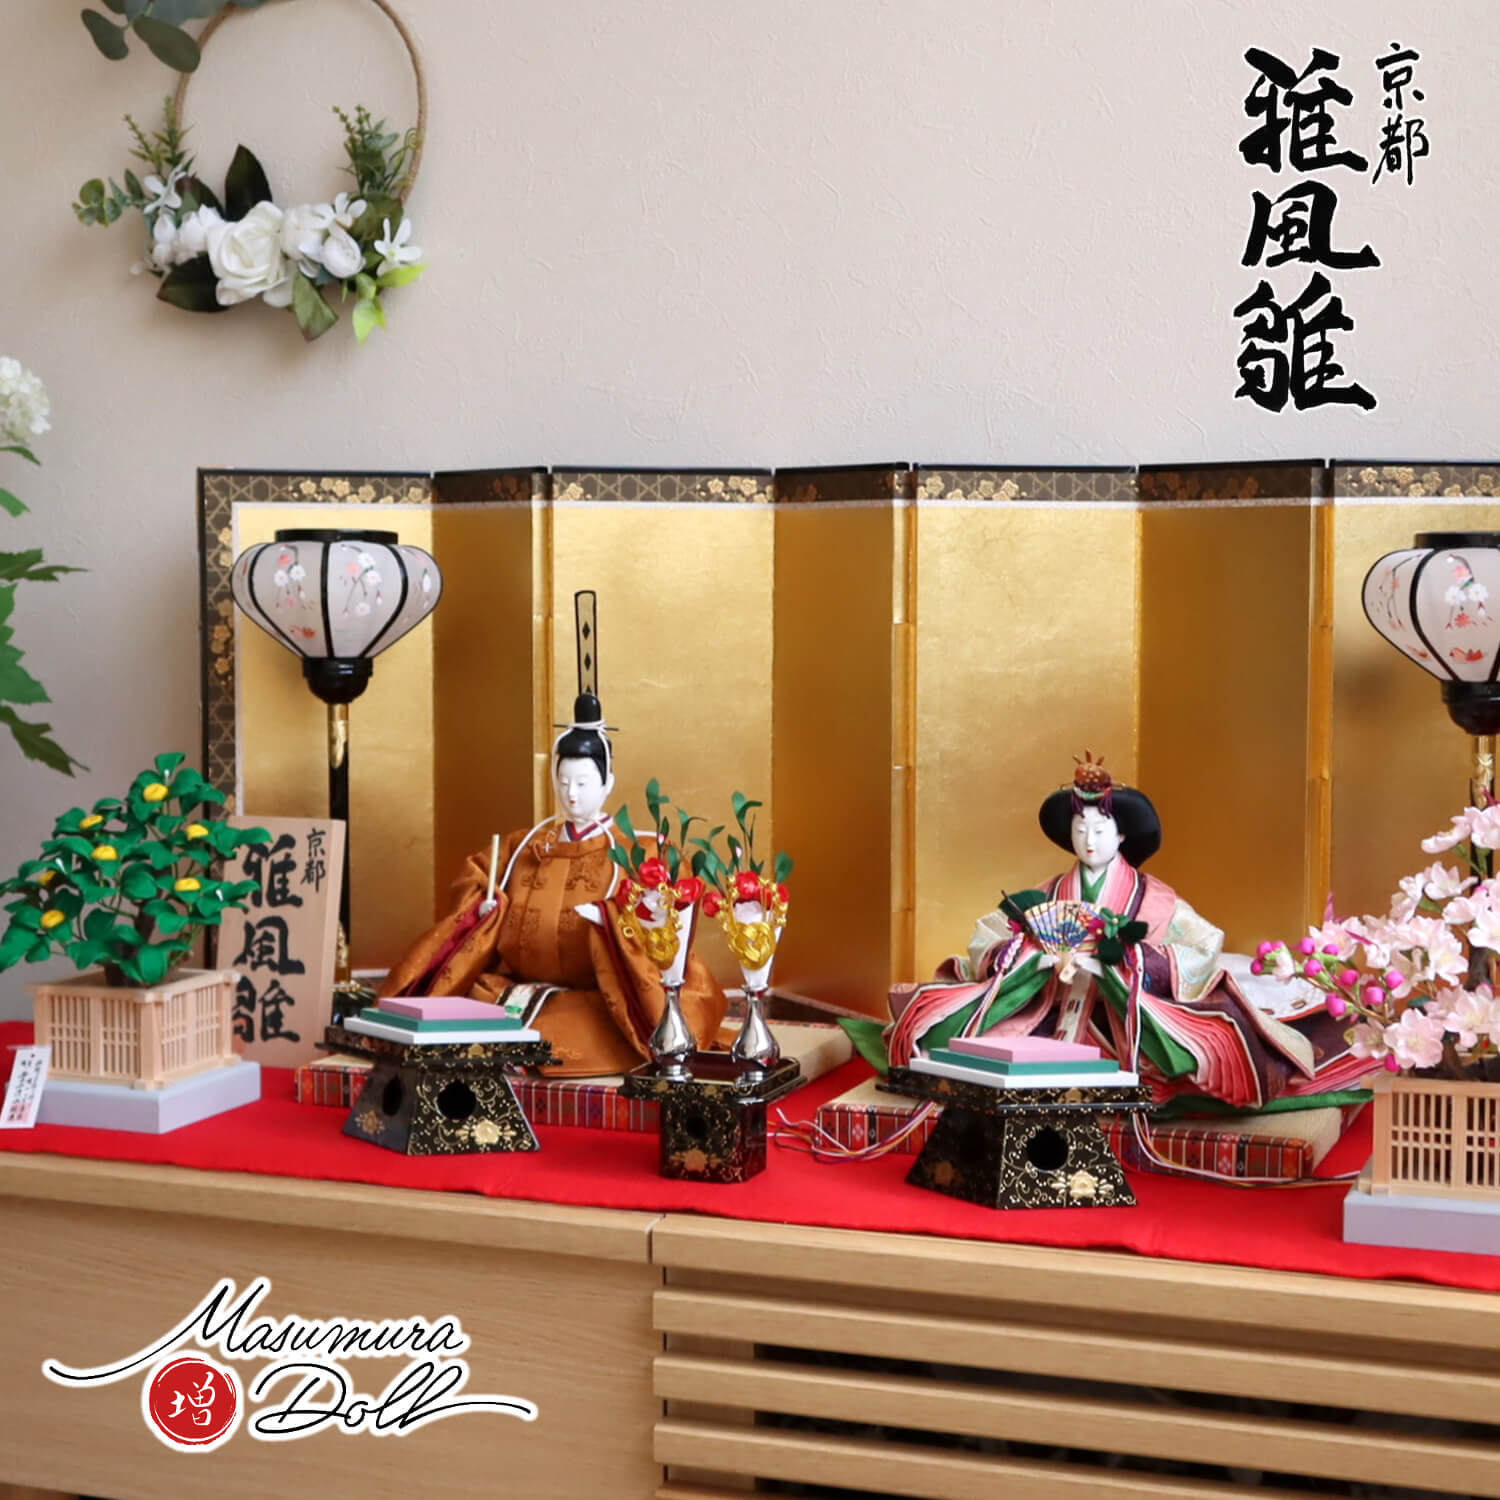 京 着付 雛人形 十二単風 木製台と屏風・雪洞付き - 年中行事用品